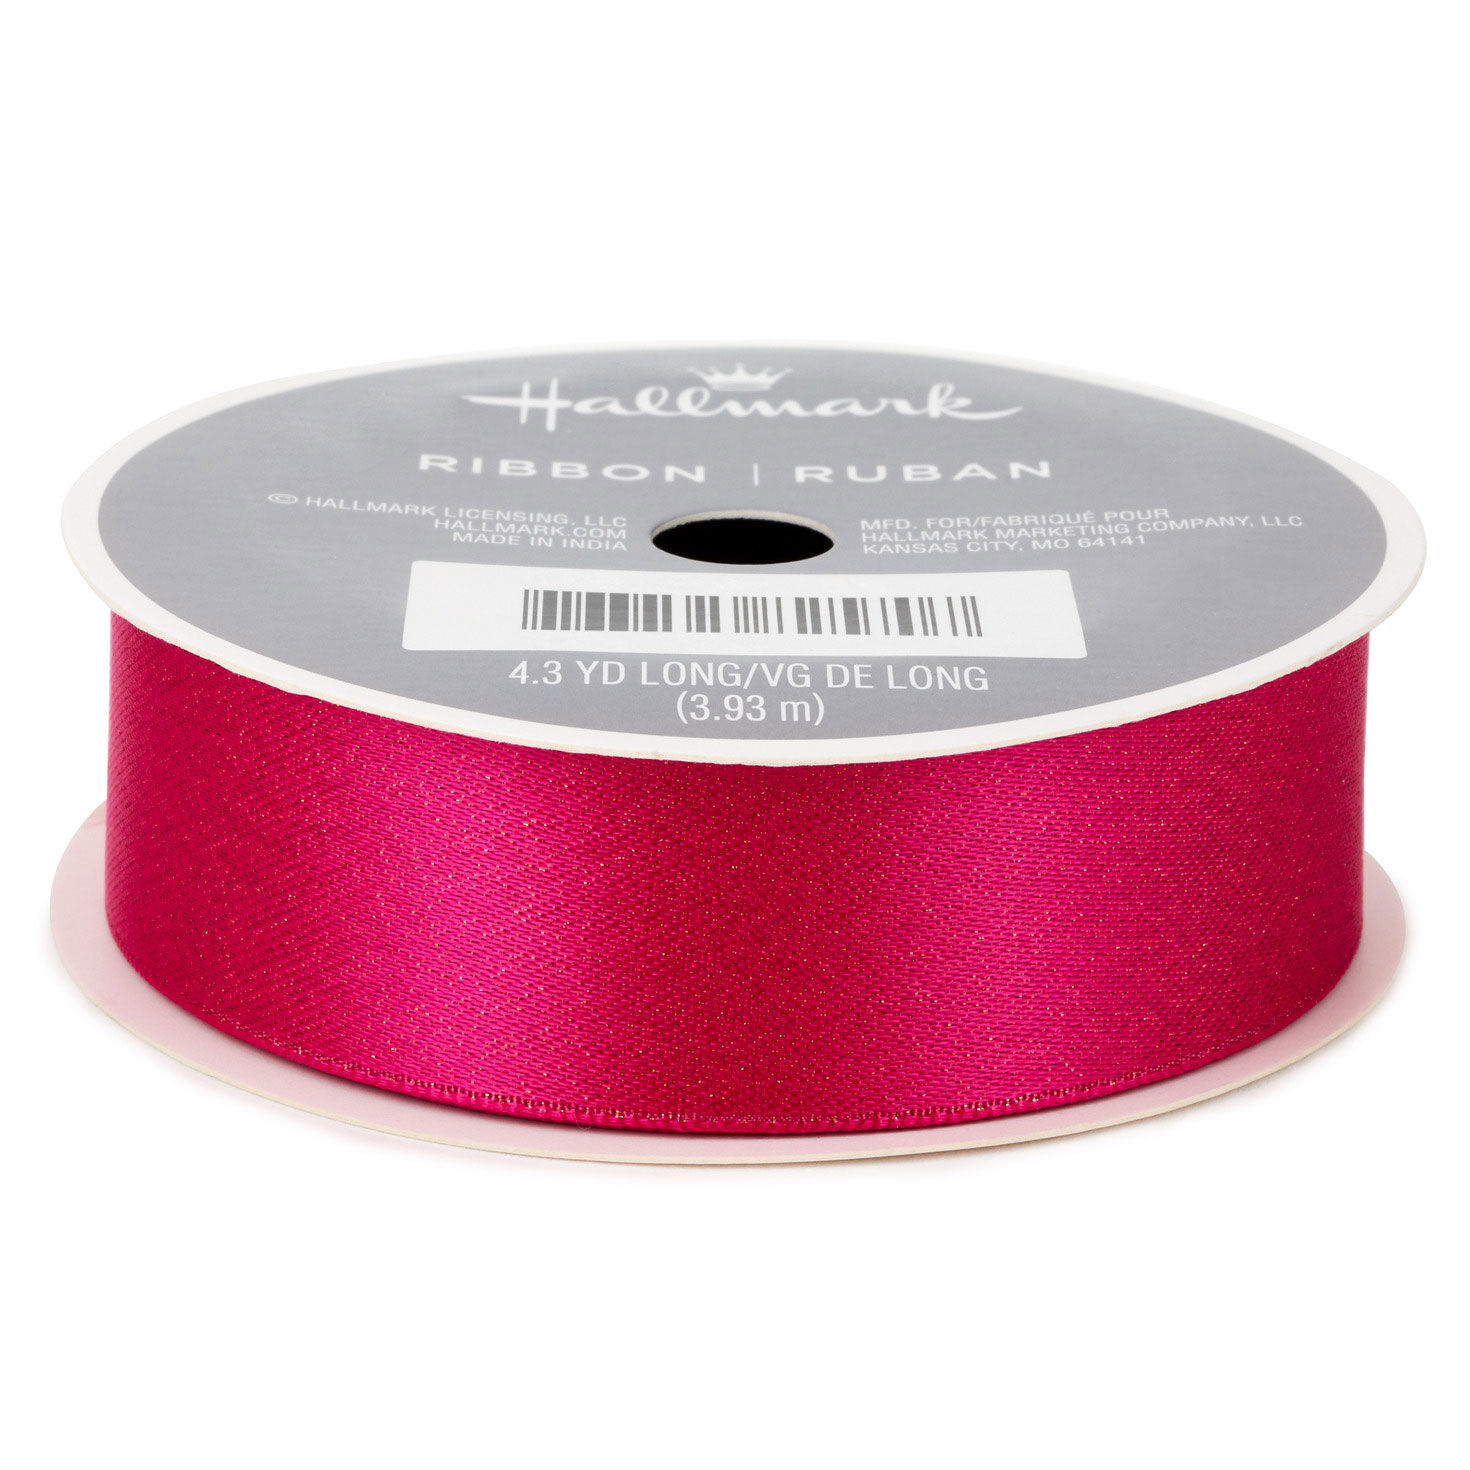 0.8 Hot Pink Ribbon With Gold Flecks, 12.9' - Bows & Ribbons